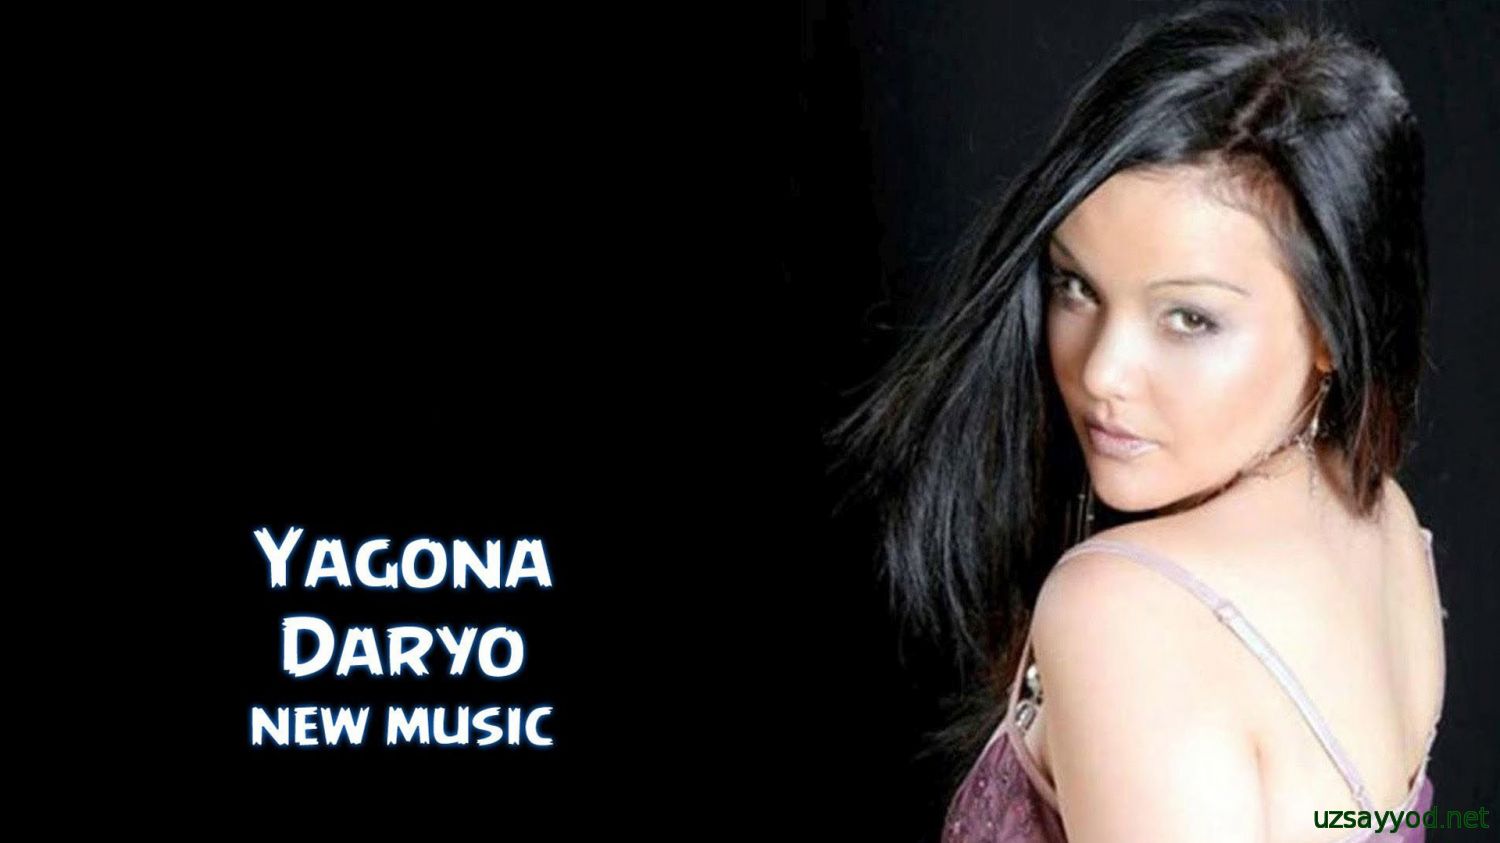 Yagona - Daryo (new music)